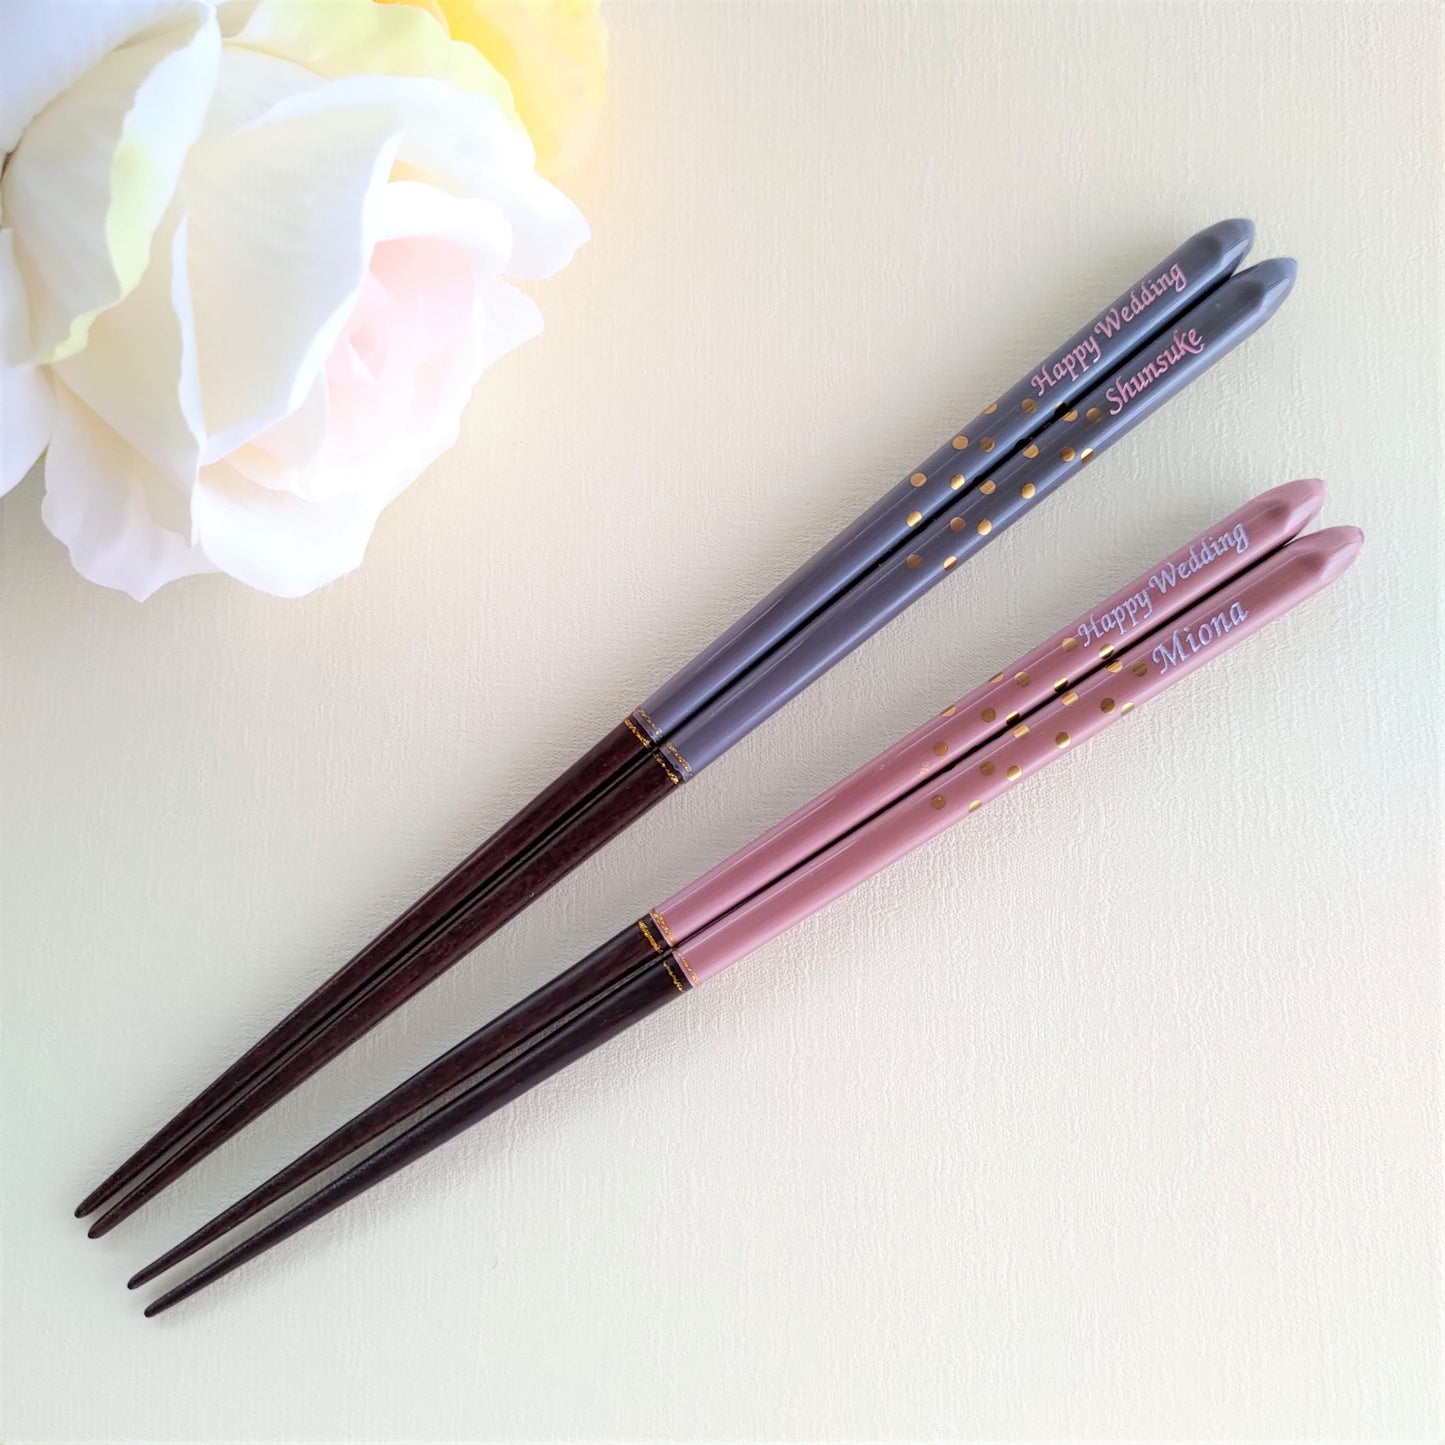 Golden spot Japanese chopsticks gray pink - DOUBLE PAIR